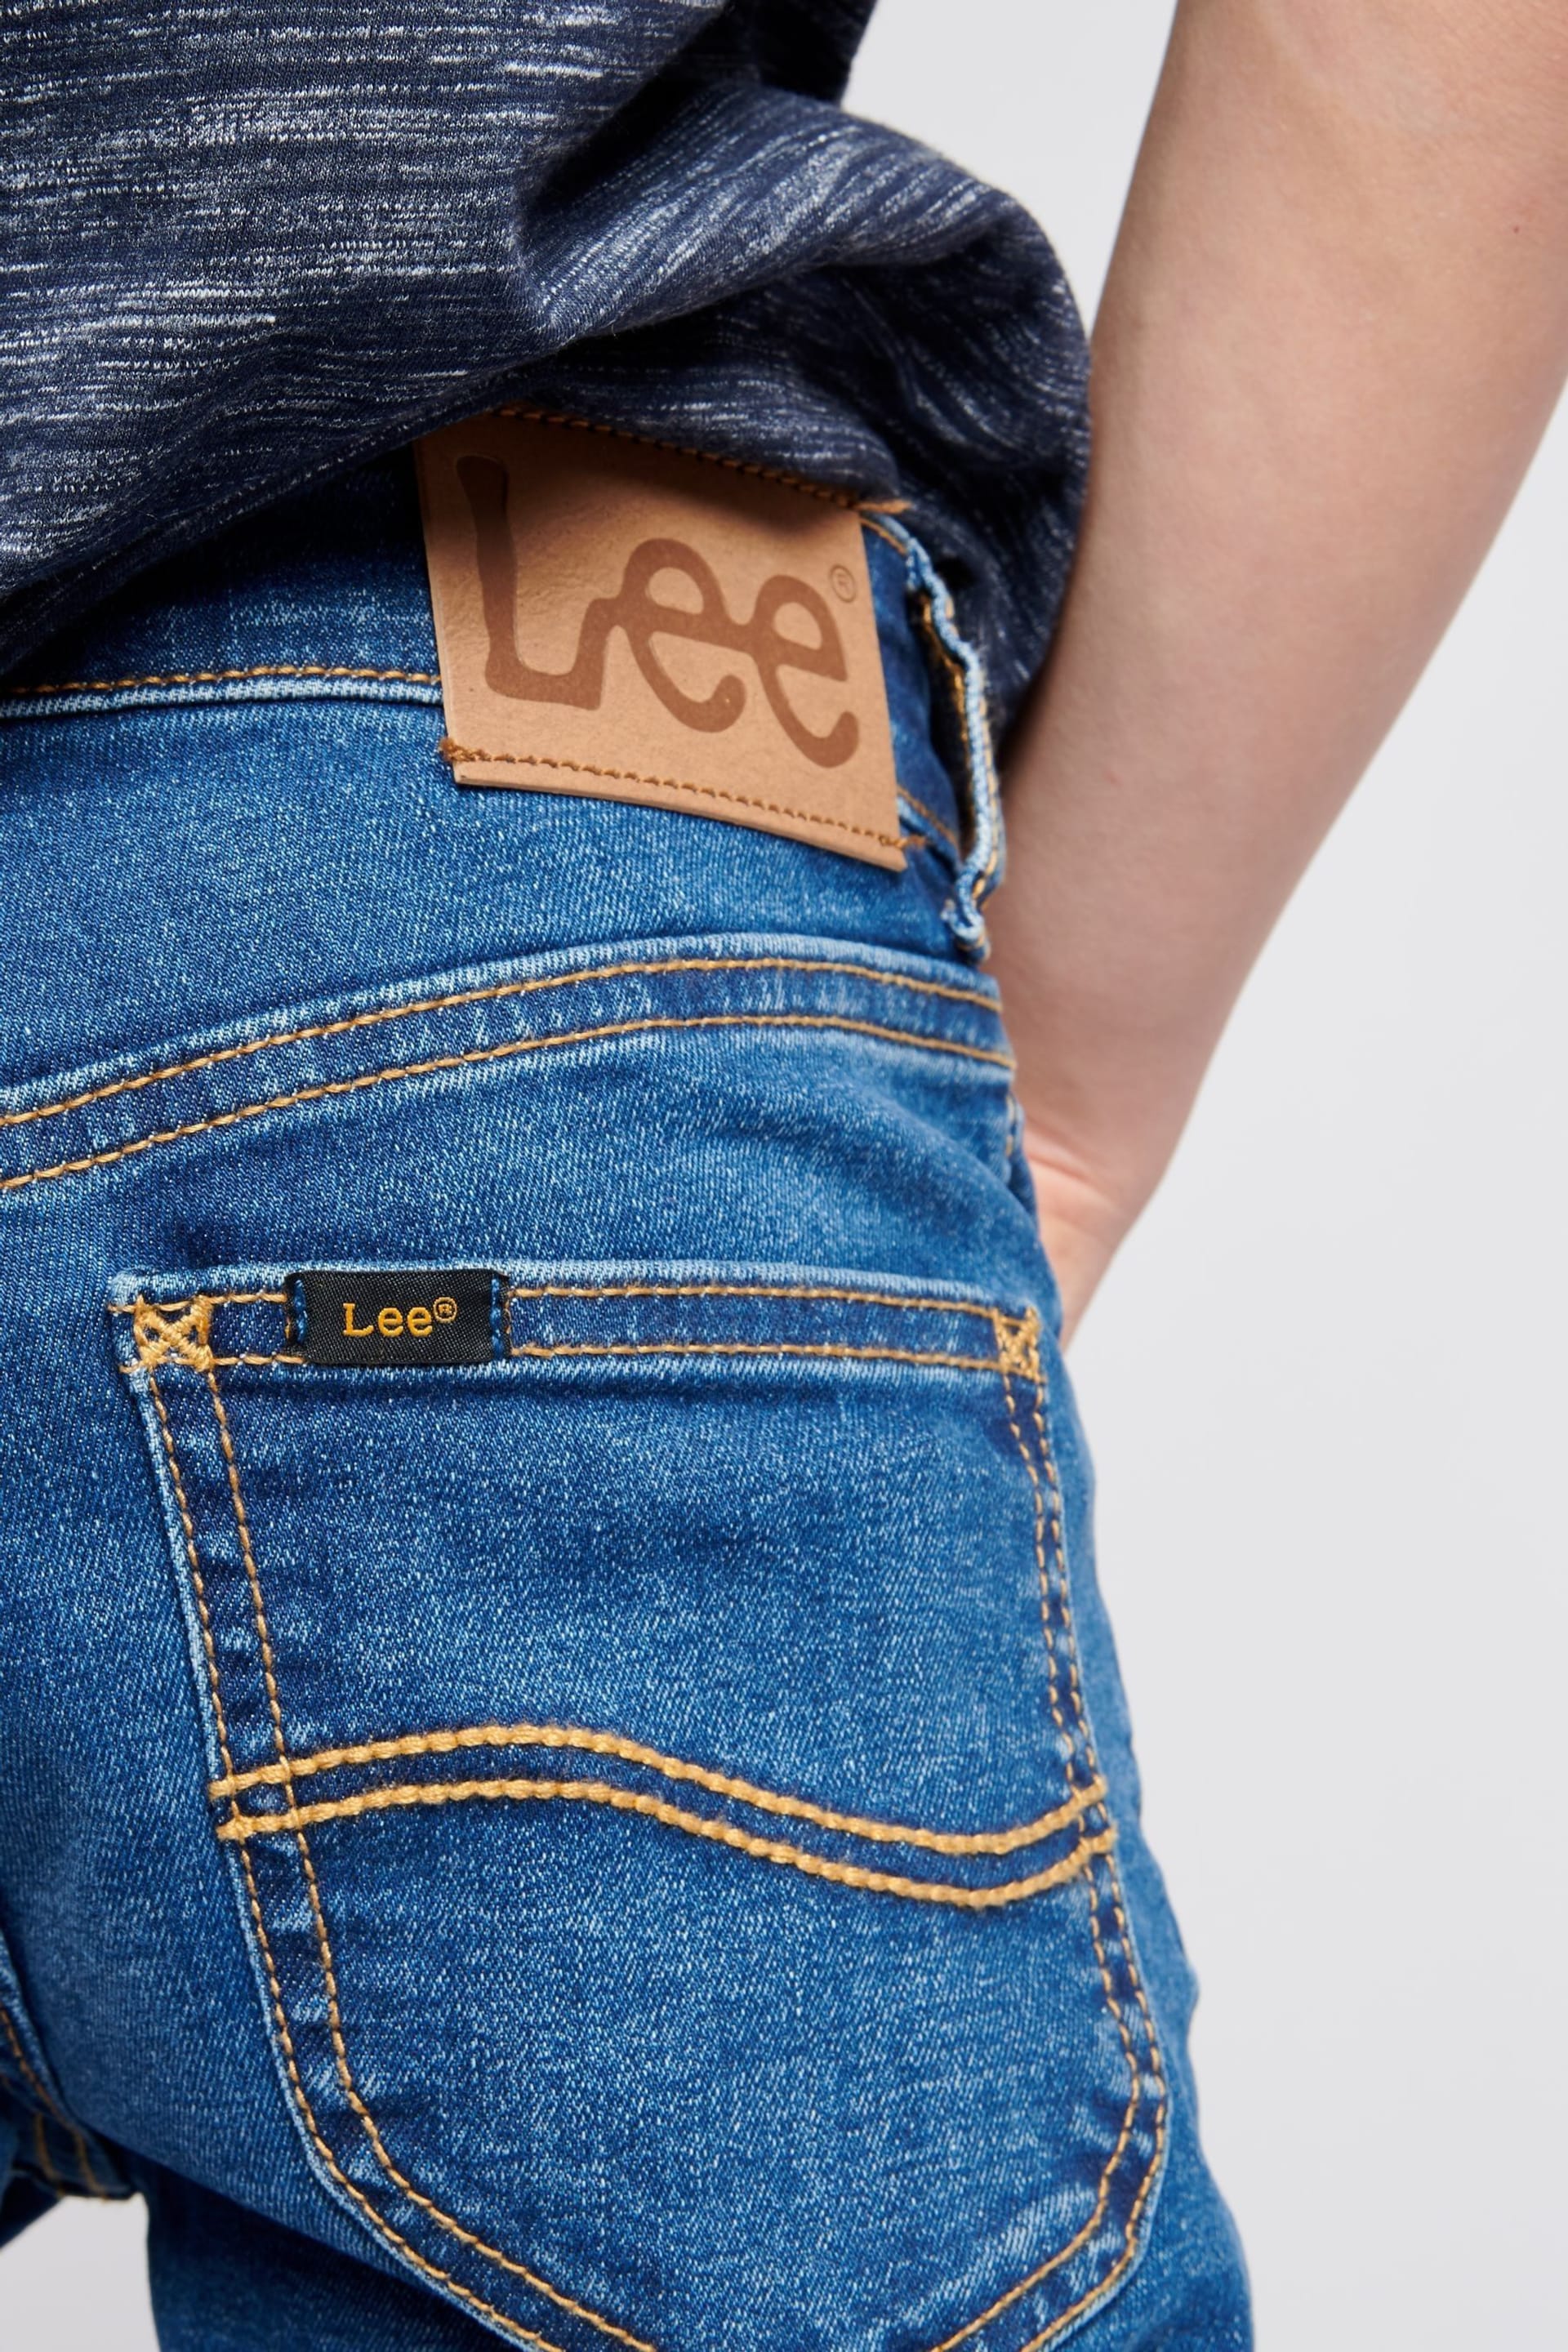 Lee Boys Luke Slim Fit Jeans - Image 6 of 9